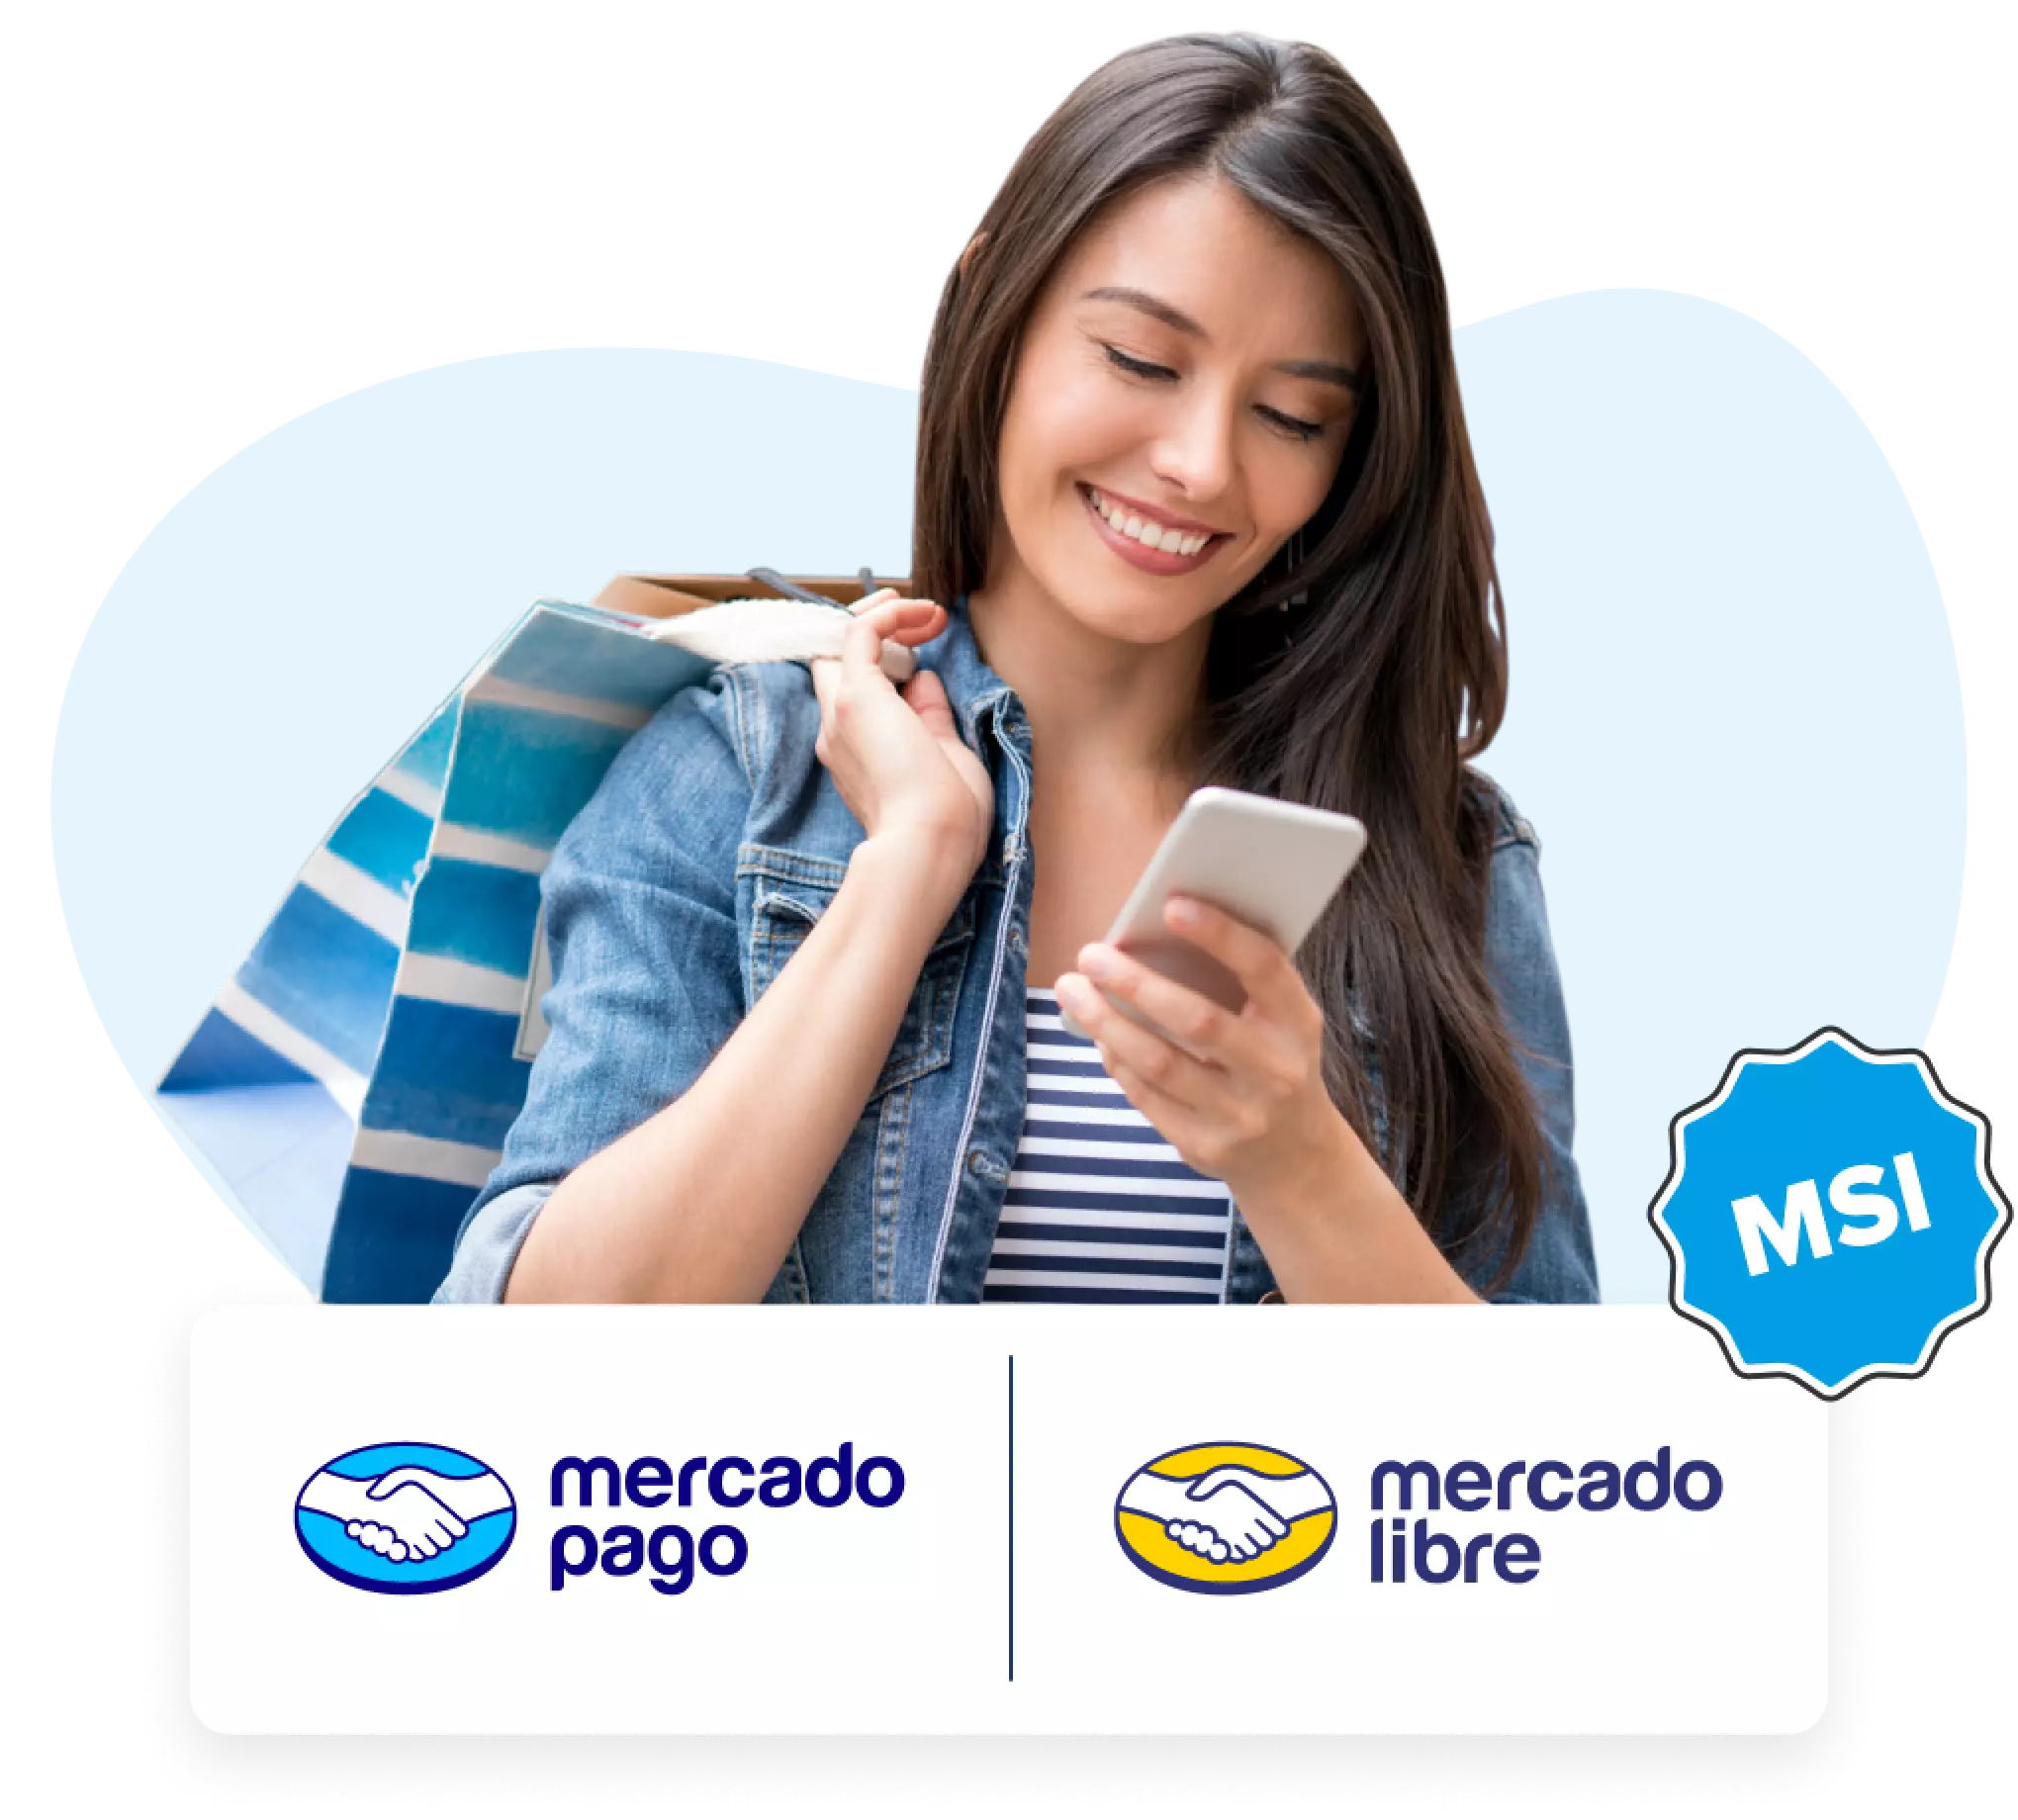 Mercado Pago Credit Card Review: MSI and No Annual Fee